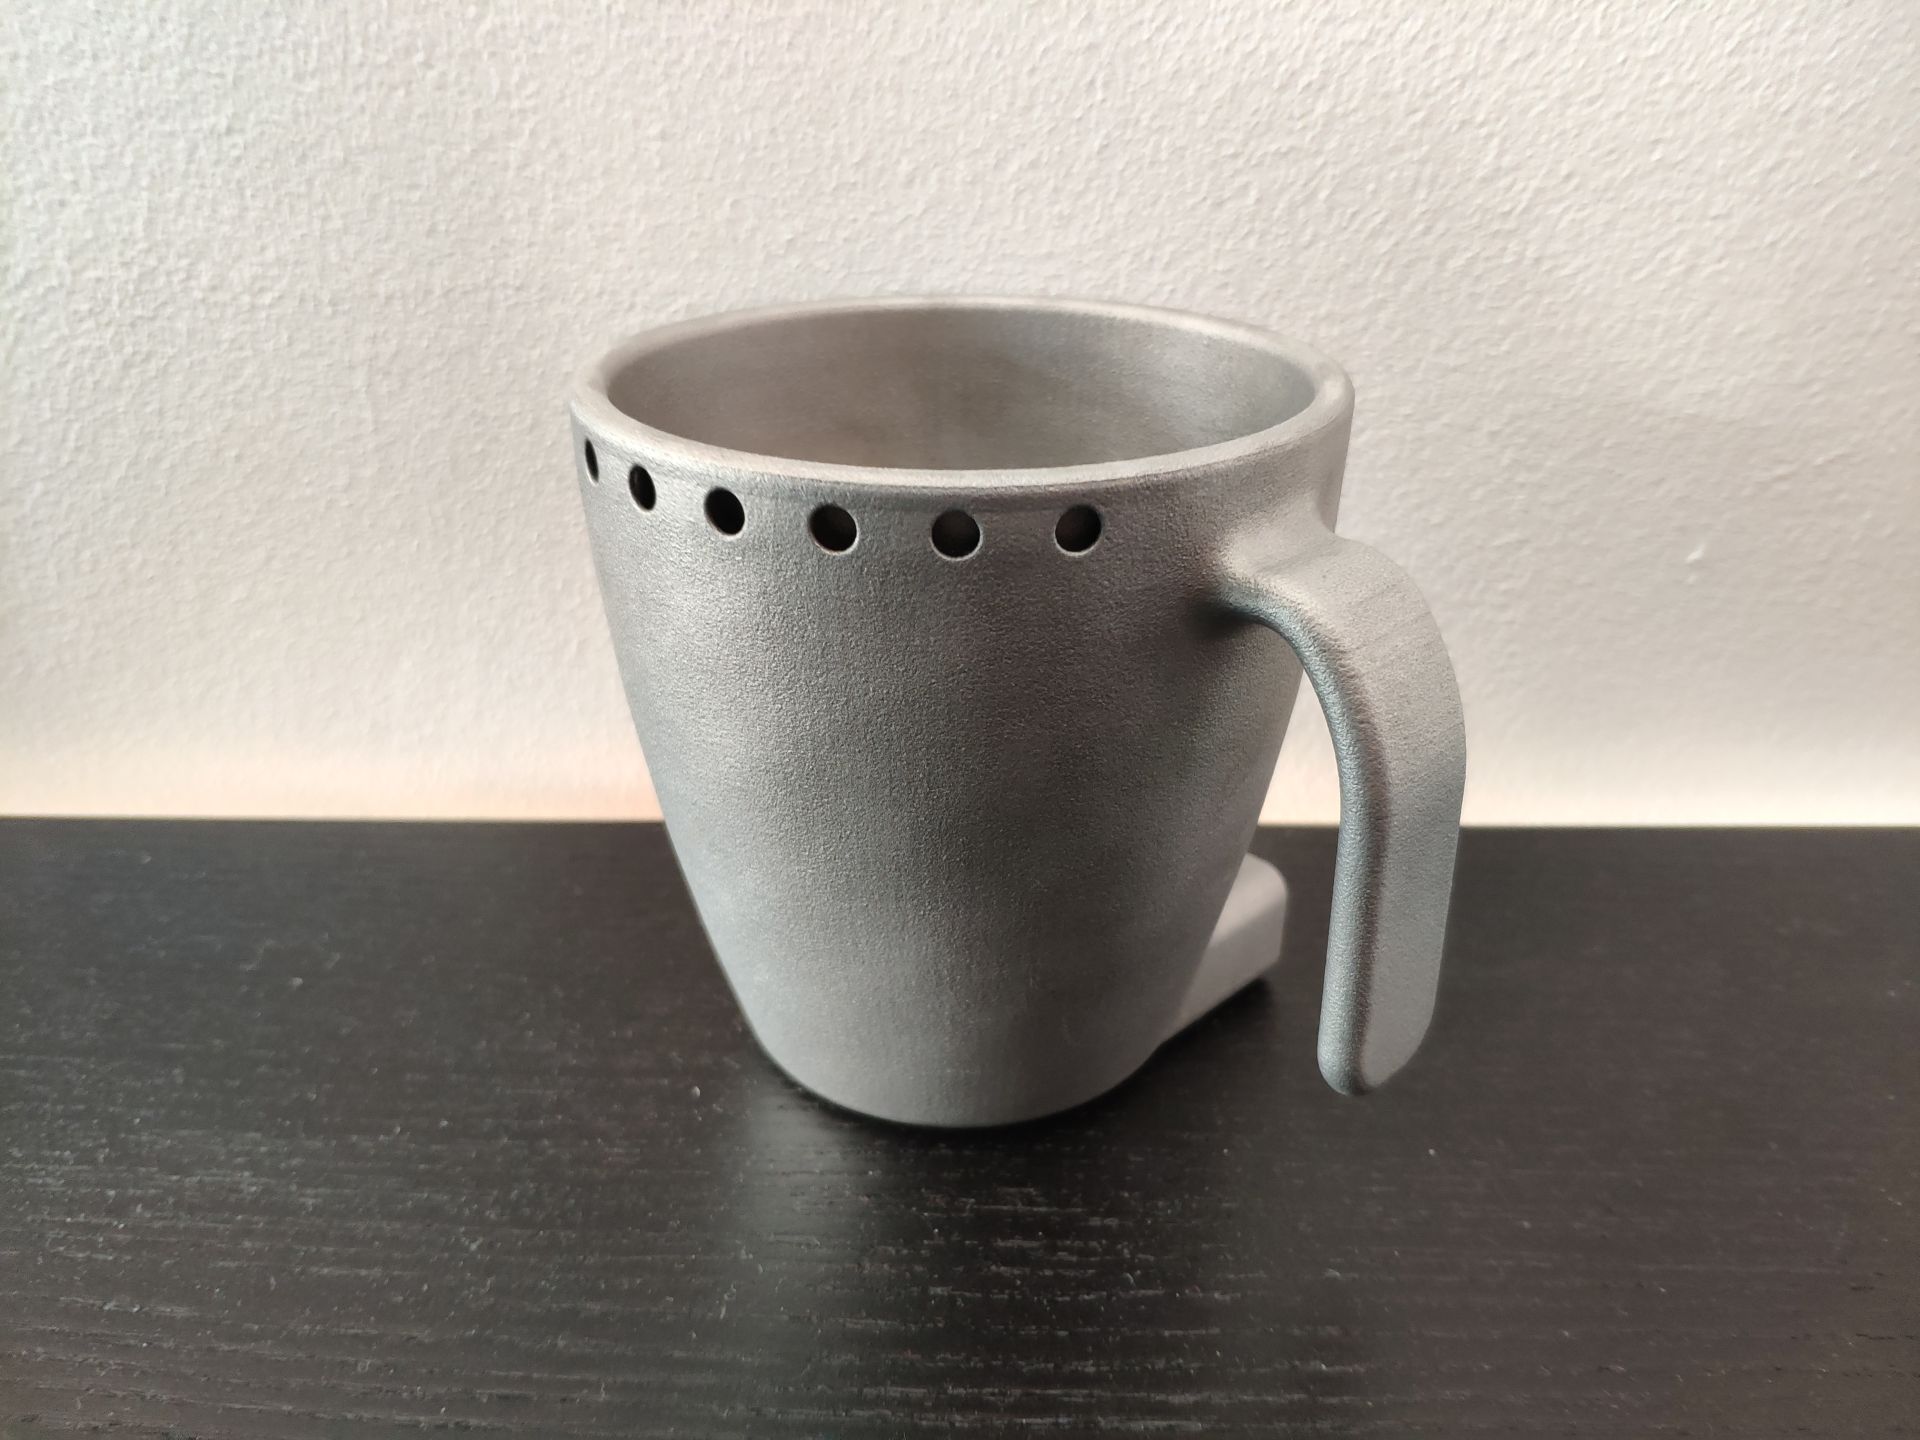 Heated mug